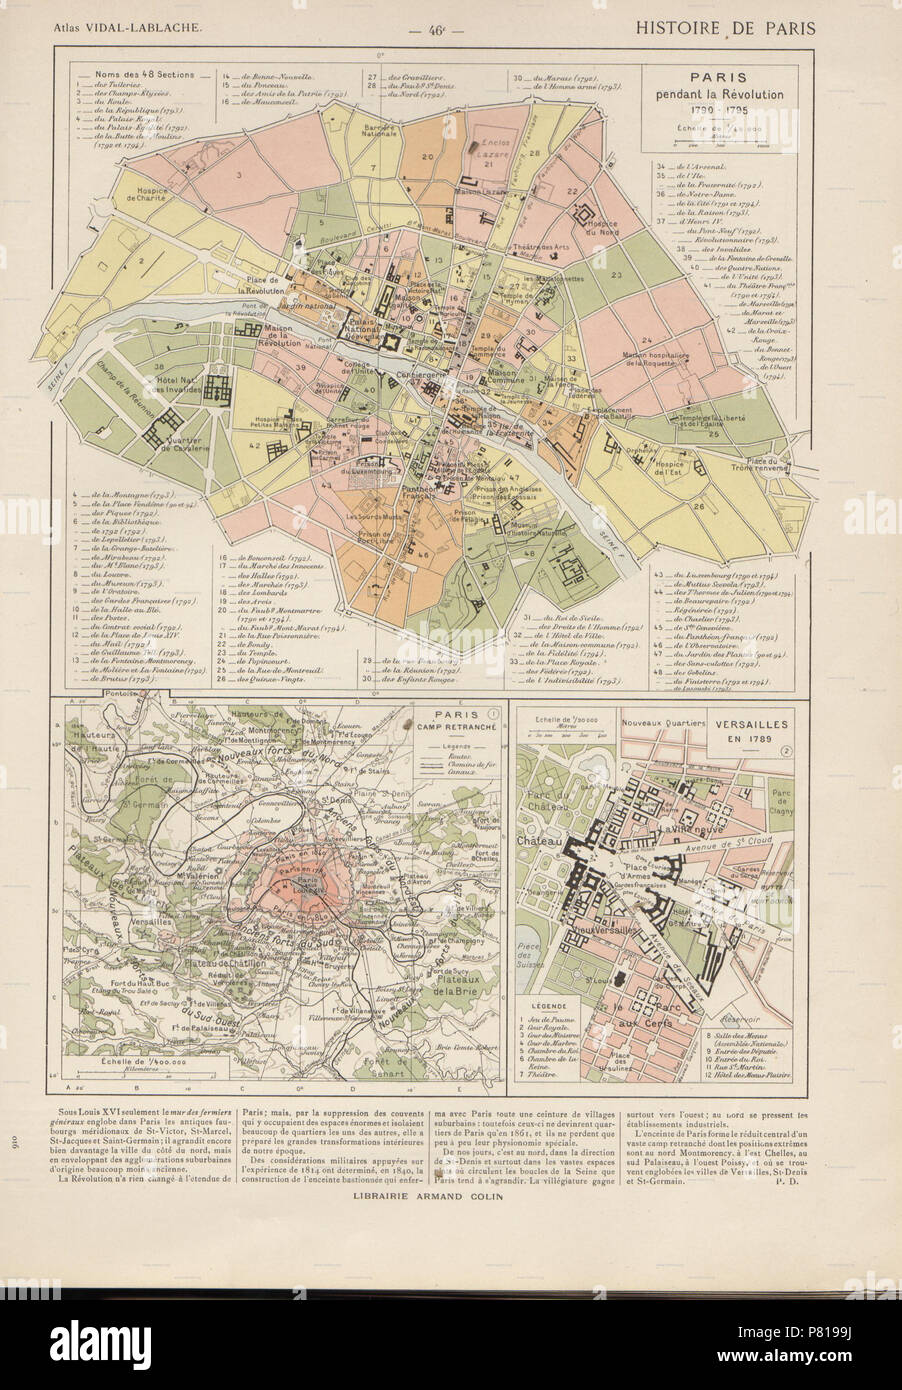 N/A. N/A 392 - Vidal Lablache Atlas General Histoire et geographie, 1795 Paris et Versailles 1789 - Hipkiss Banque D'Images